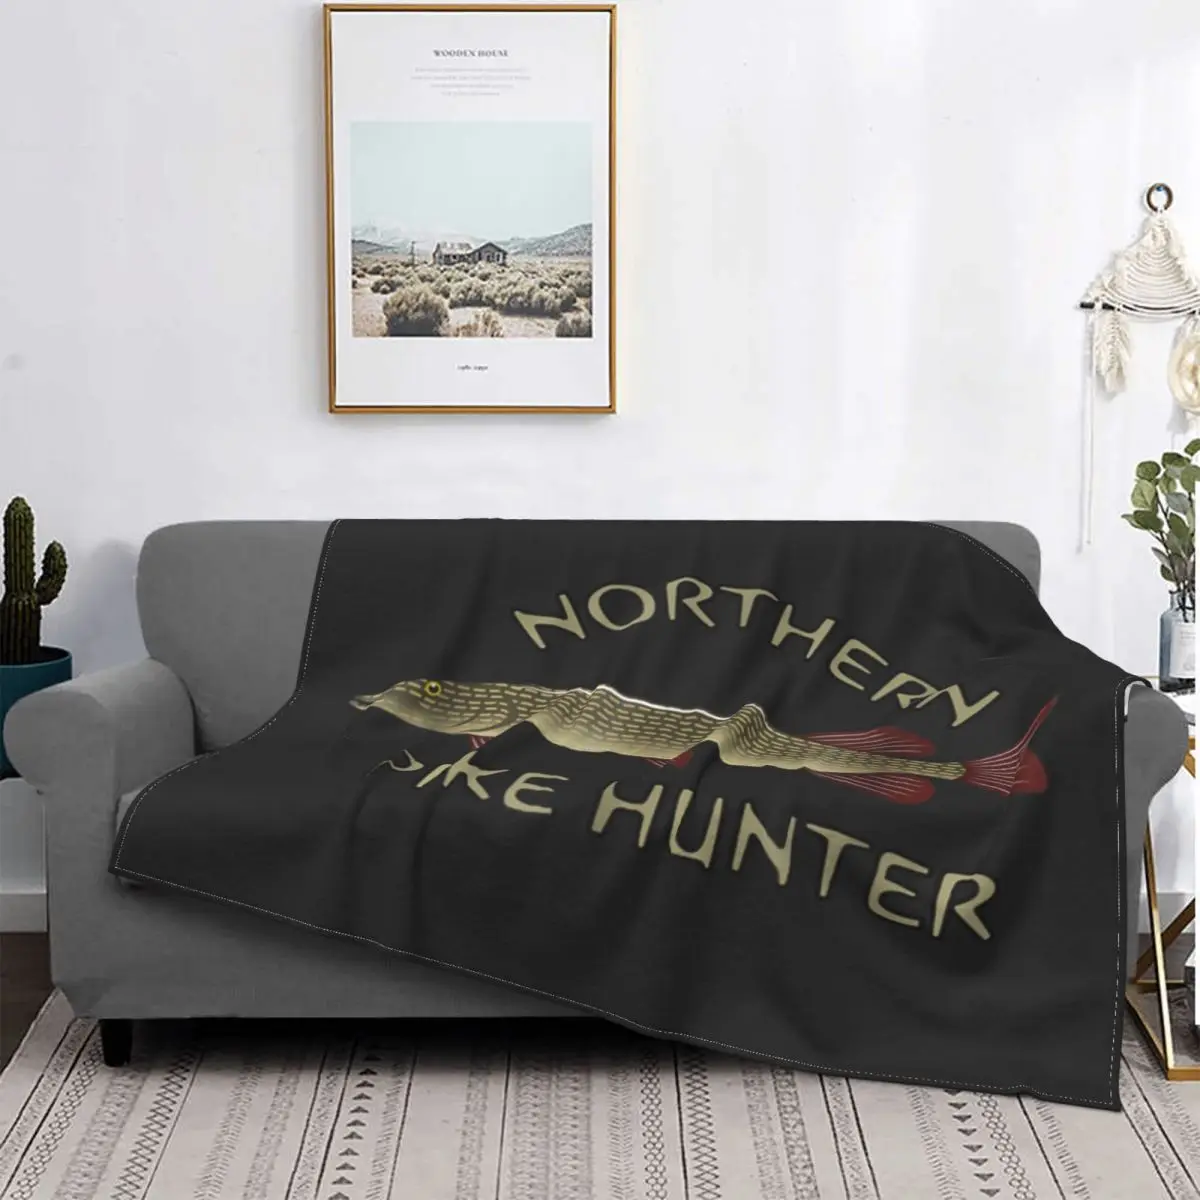 

Northern Pike Hunter Fishing-Manta de lucio del norte, colcha a cuadros para cama, sofá, mantas, ropa de cama y fundas